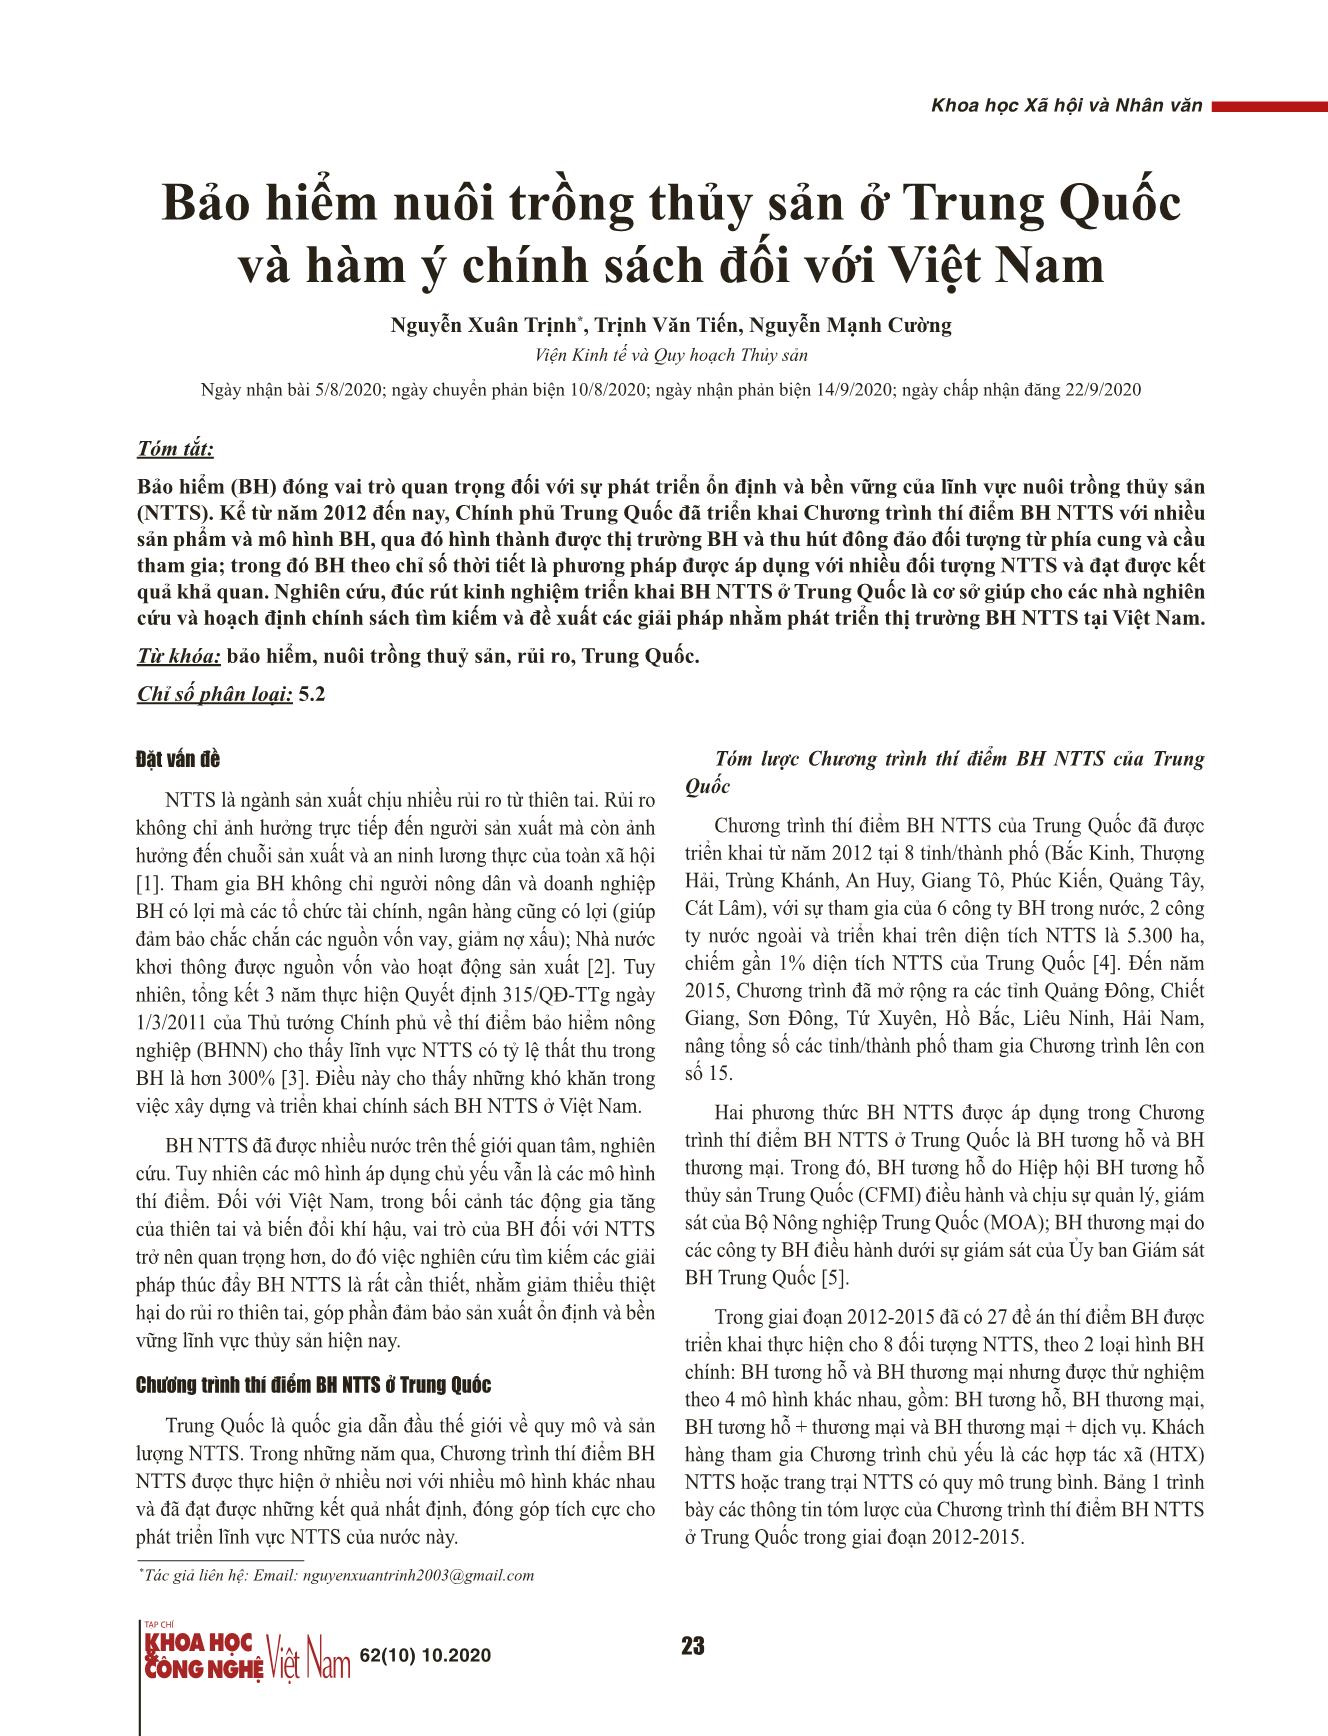 Bảo hiểm nuôi trồng thủy sản ở Trung Quốc và hàm ý chính sách đối với Việt Nam trang 1